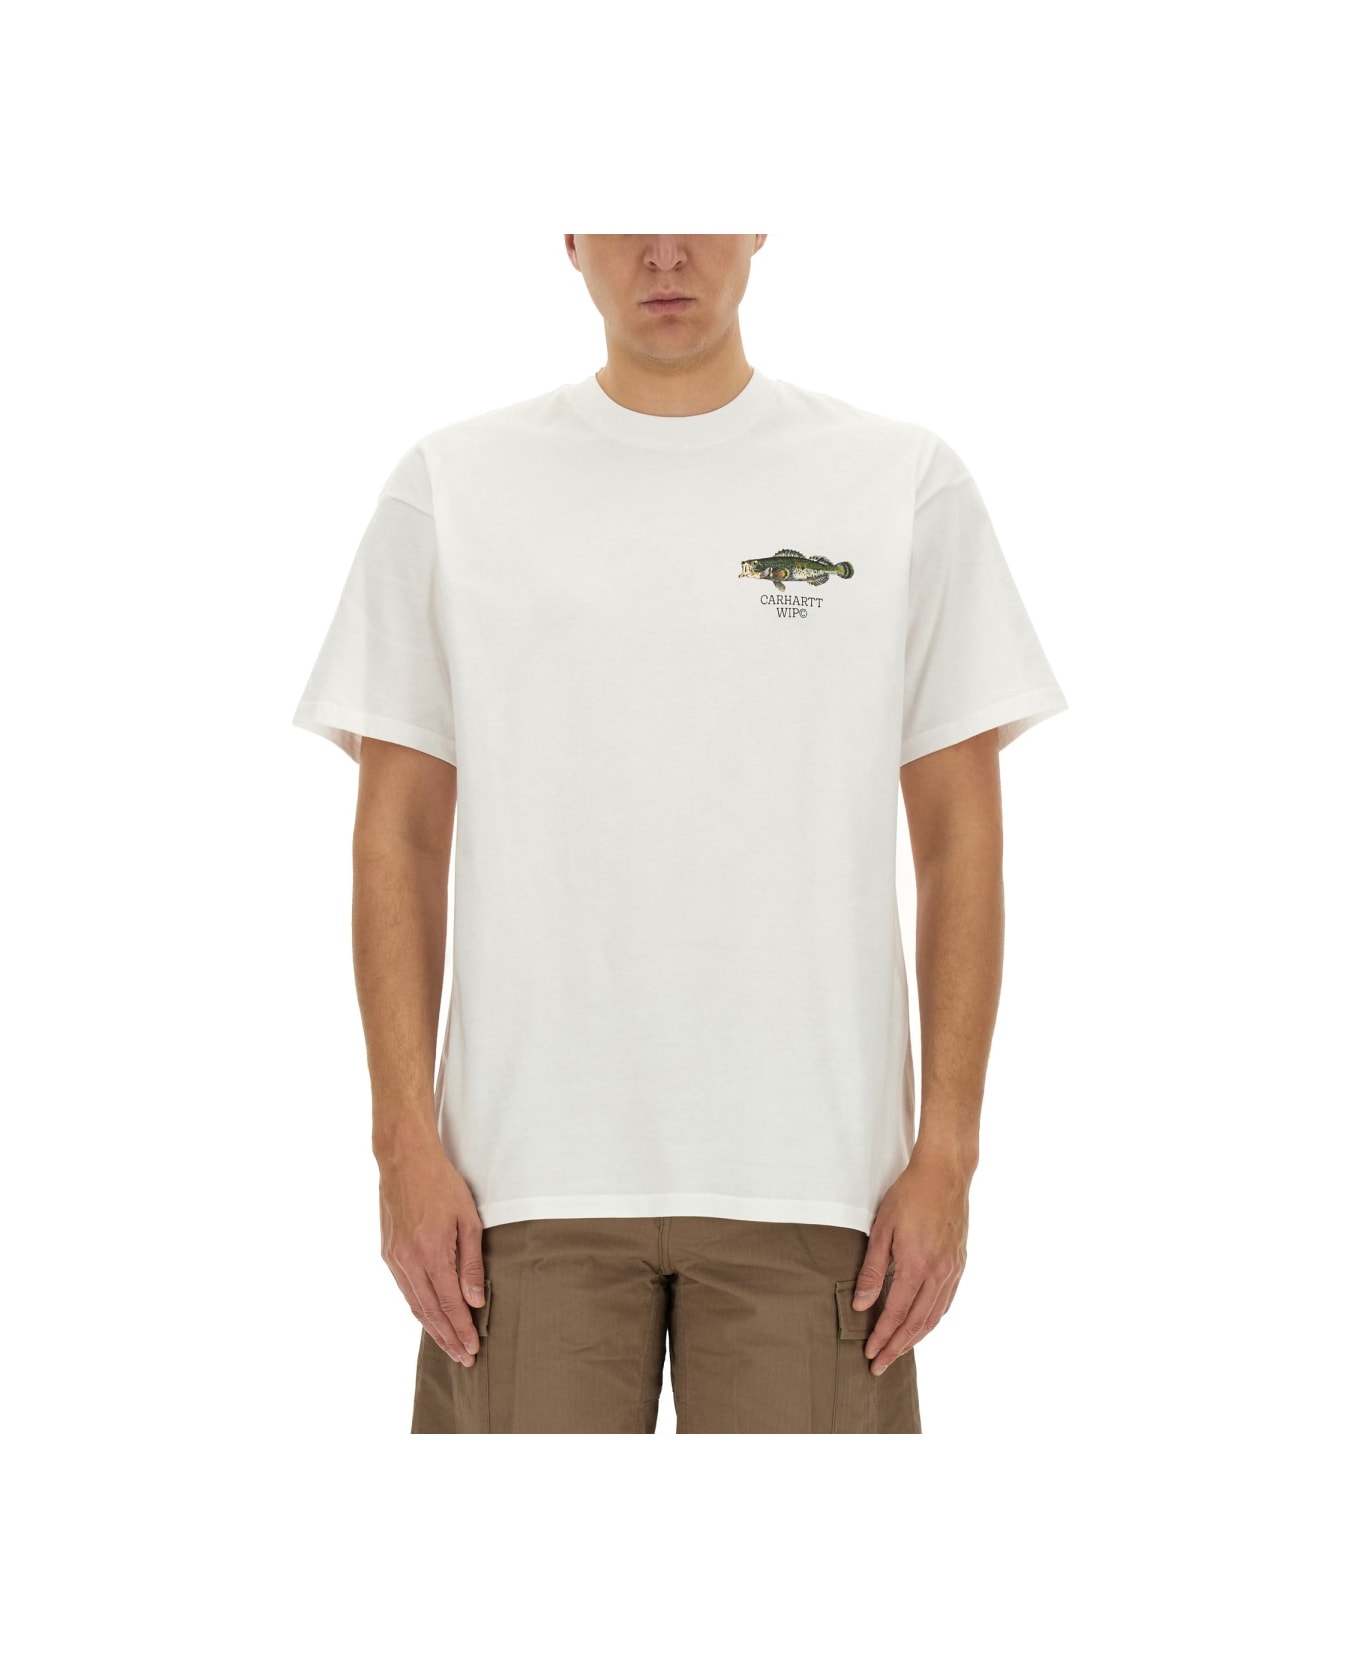 Carhartt WIP T-shirt 'fish' - White シャツ